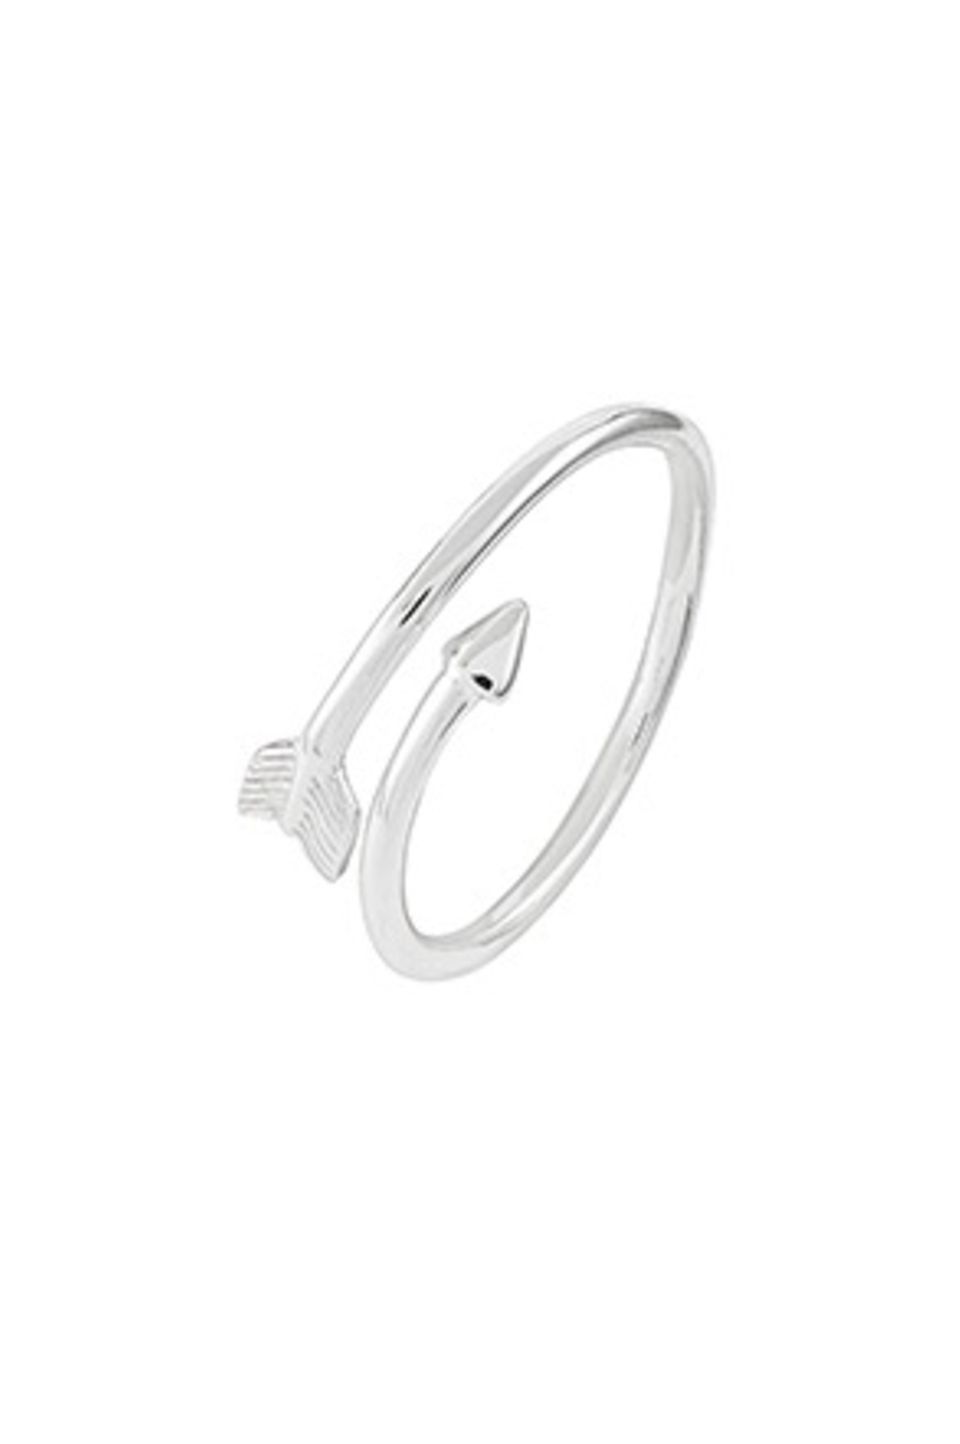 Mitten ins Herz: Pfeil-Ring aus Sterling Silber von Accessorize, circa 16 Euro.